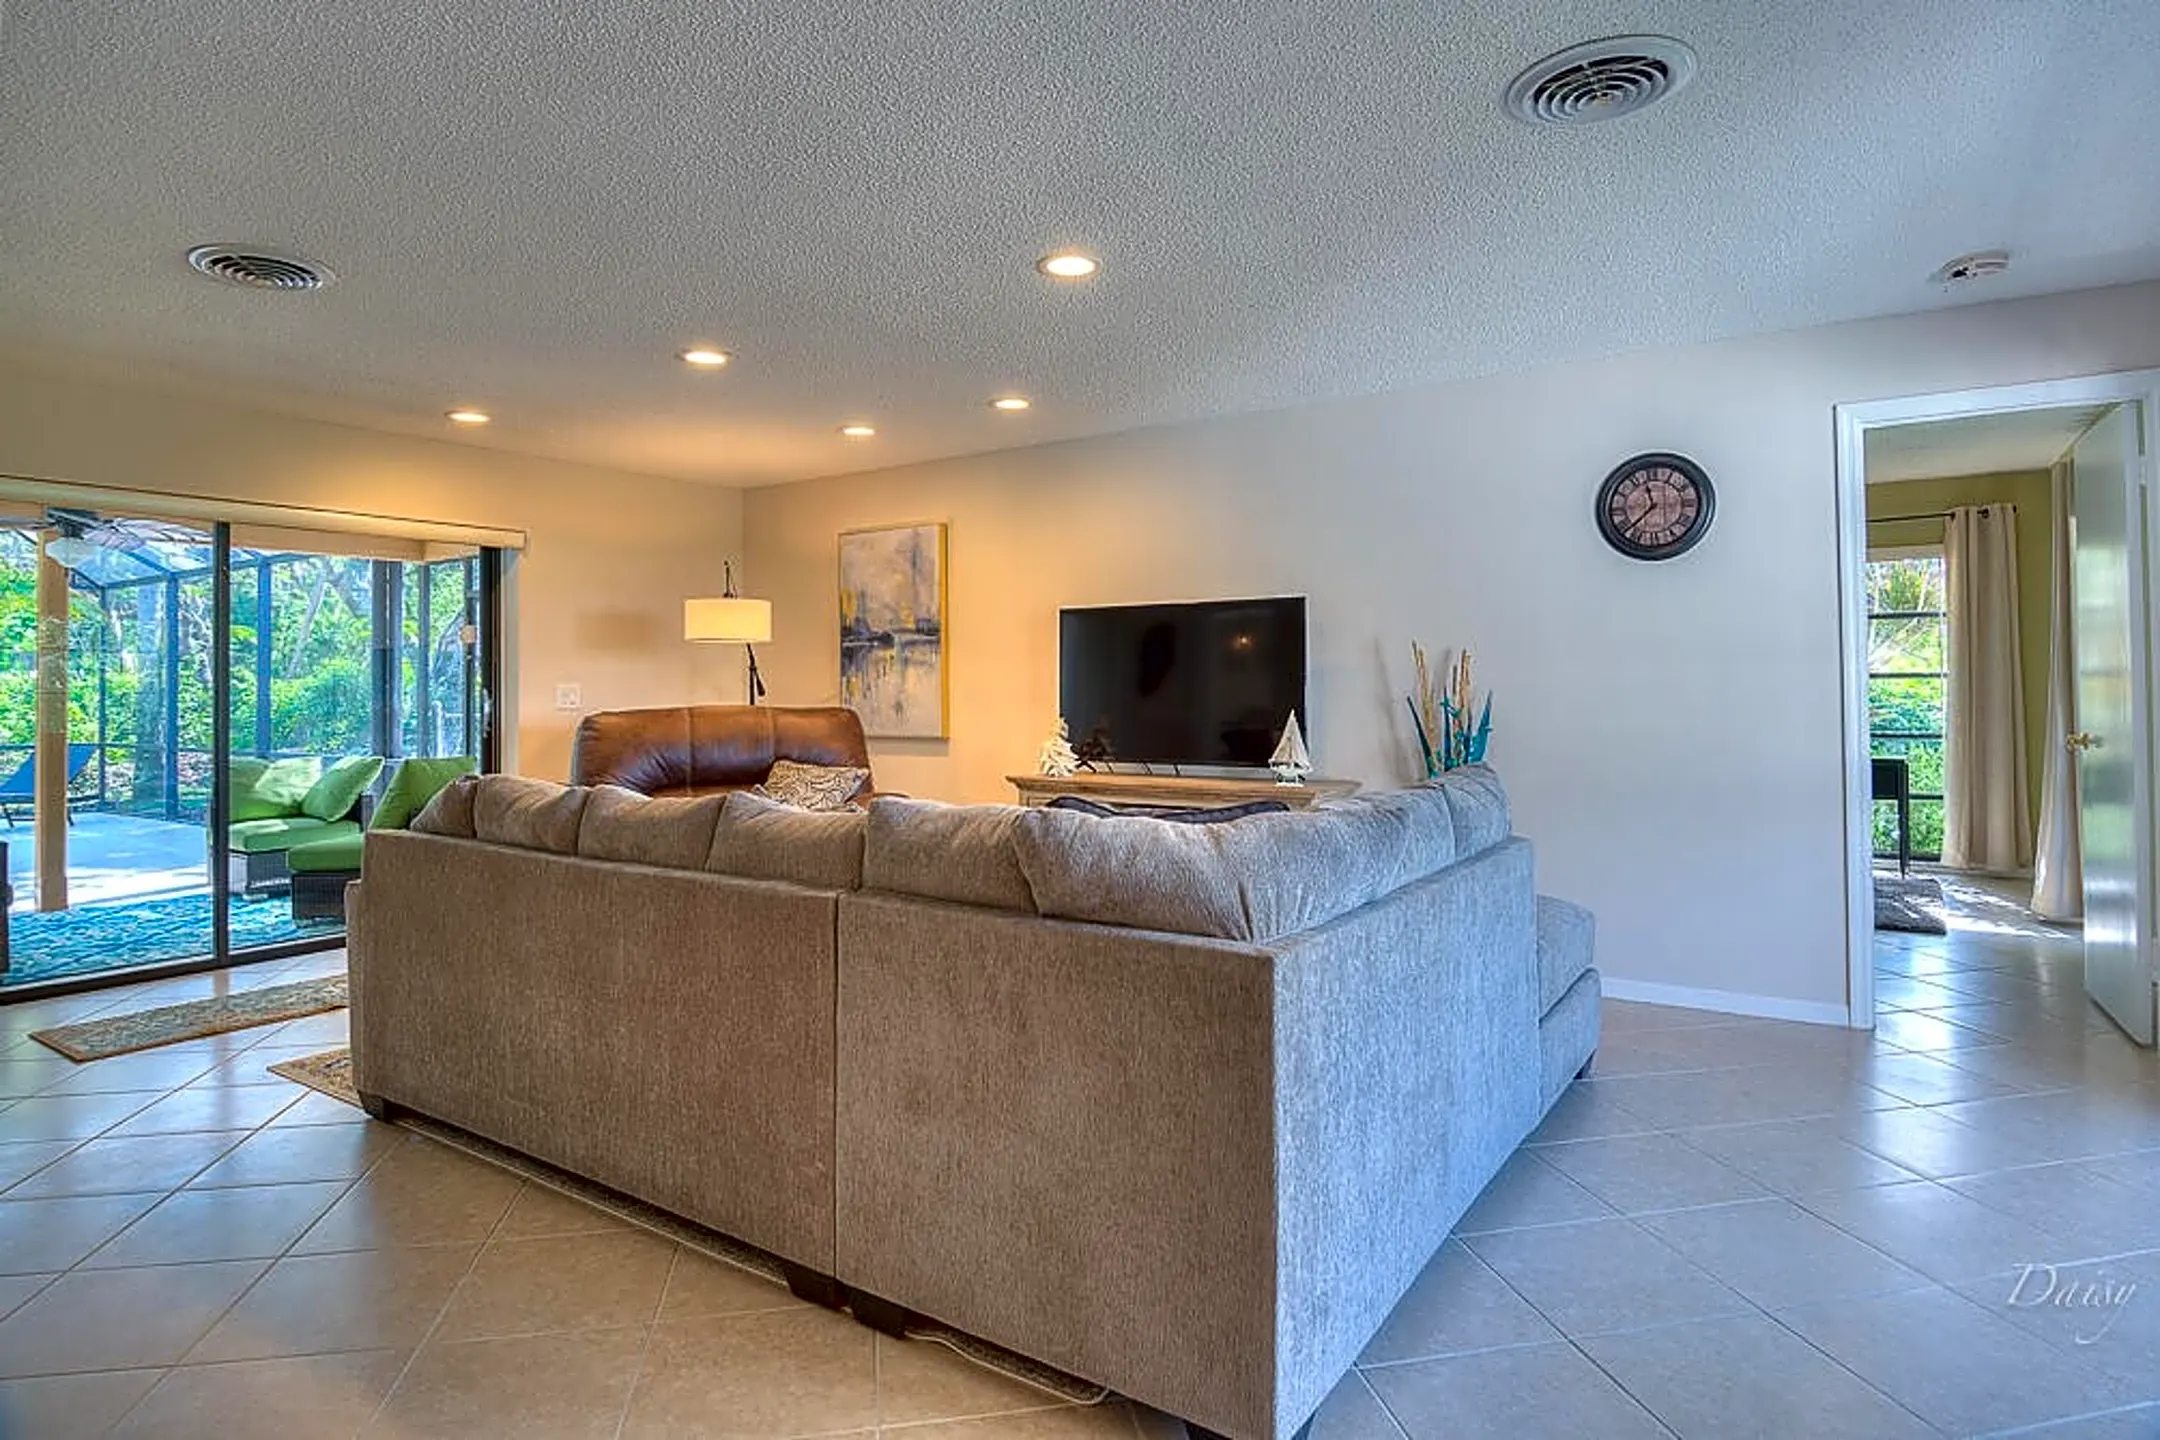 Living Room - 3820 Indian River Dr E - Vero Beach, FL